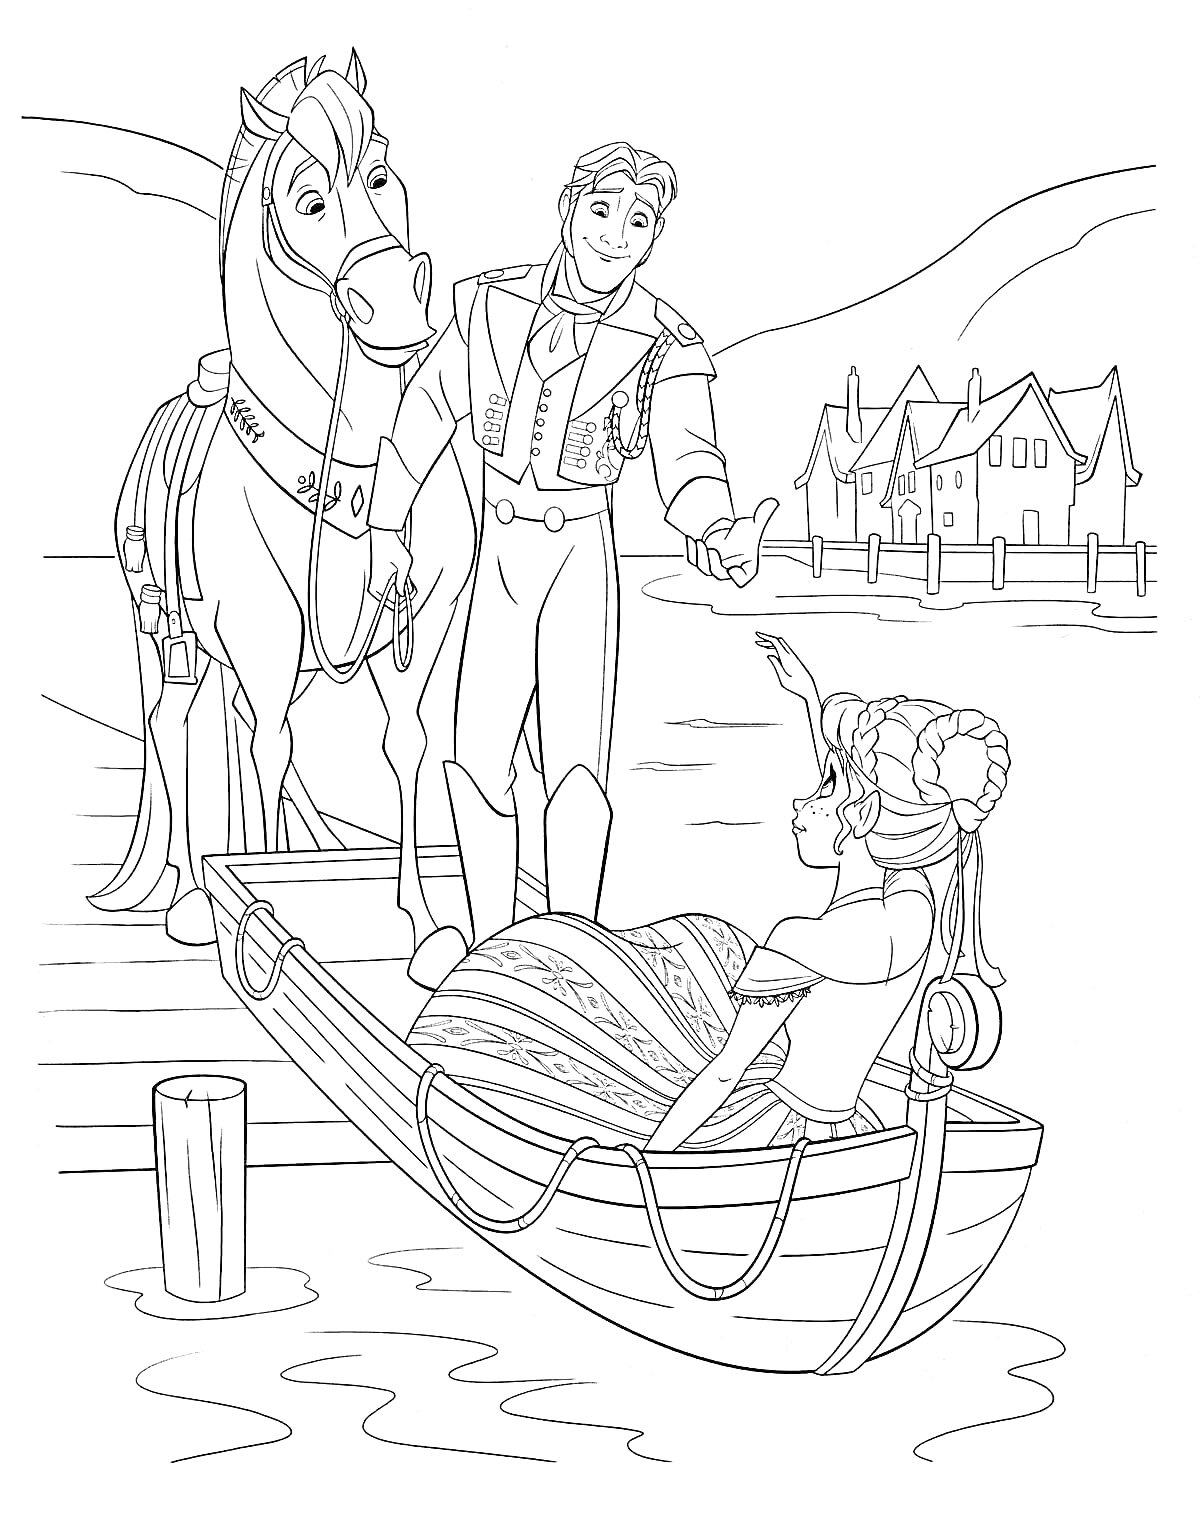 Девушка в лодке с юношей и лошадью на берегу в городе